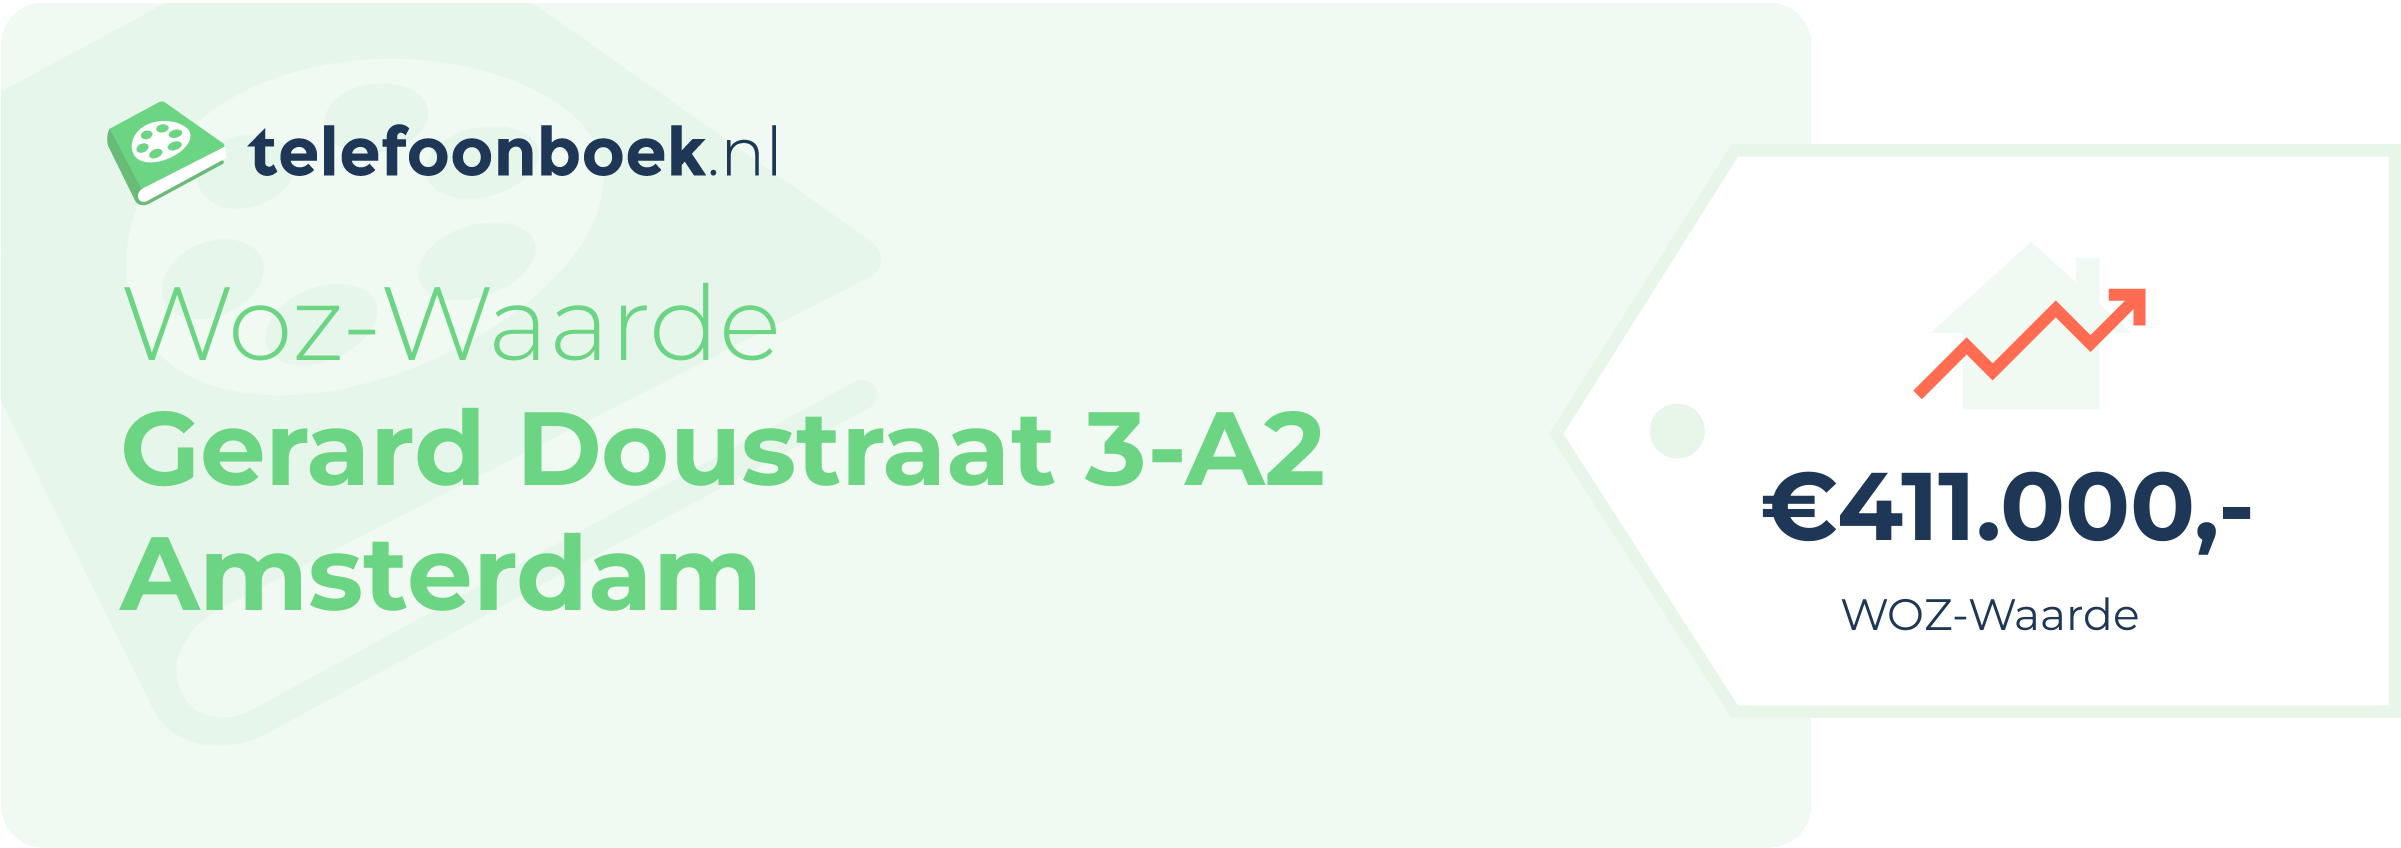 WOZ-waarde Gerard Doustraat 3-A2 Amsterdam